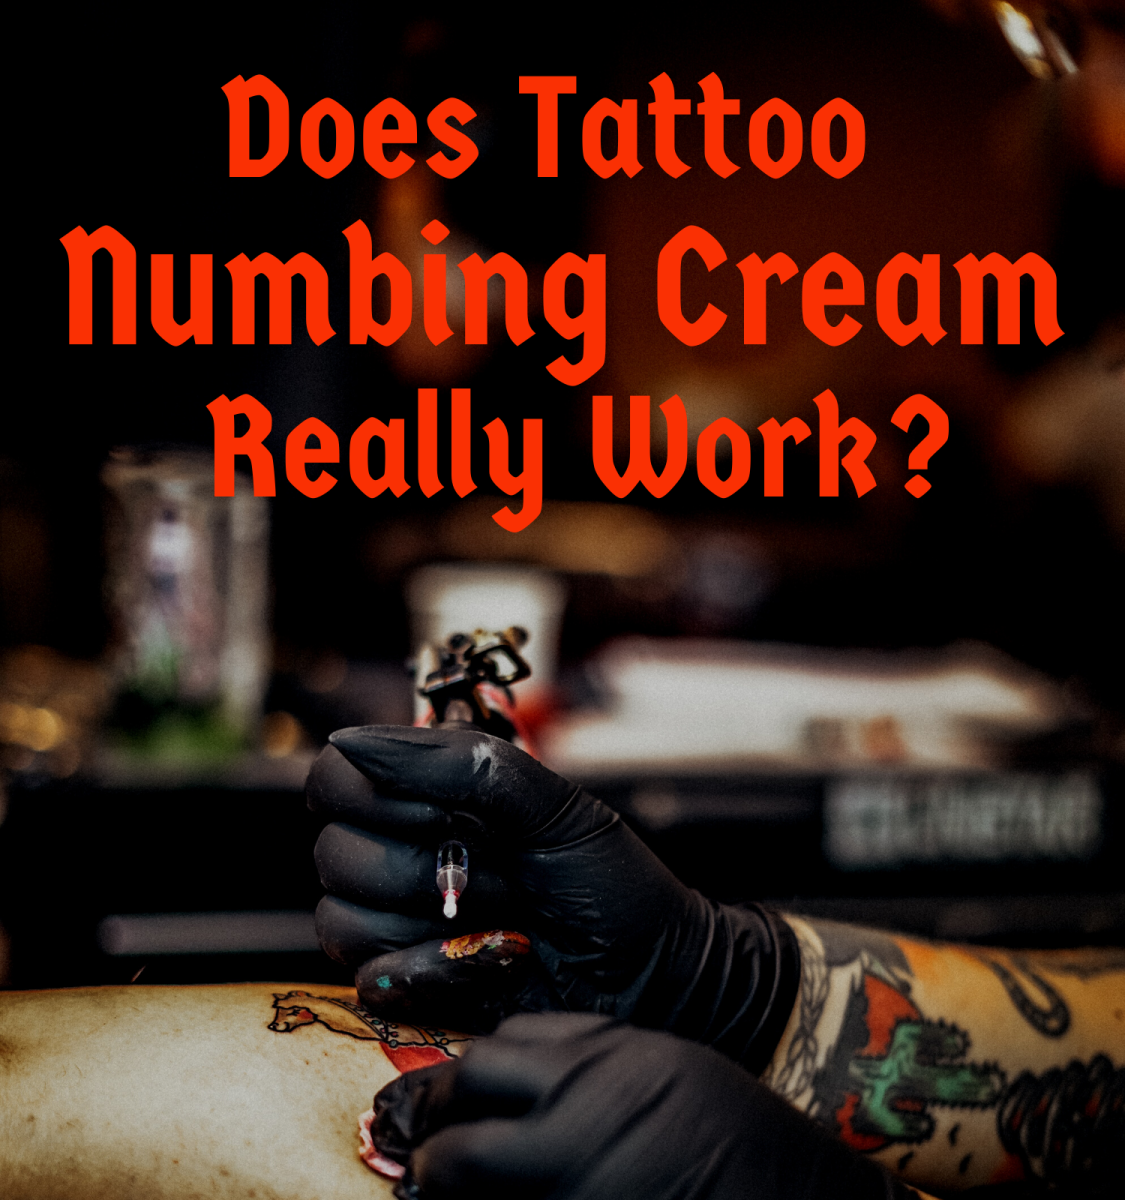 Fungují krémy na znecitlivění tetování, a pokud ano, jak?